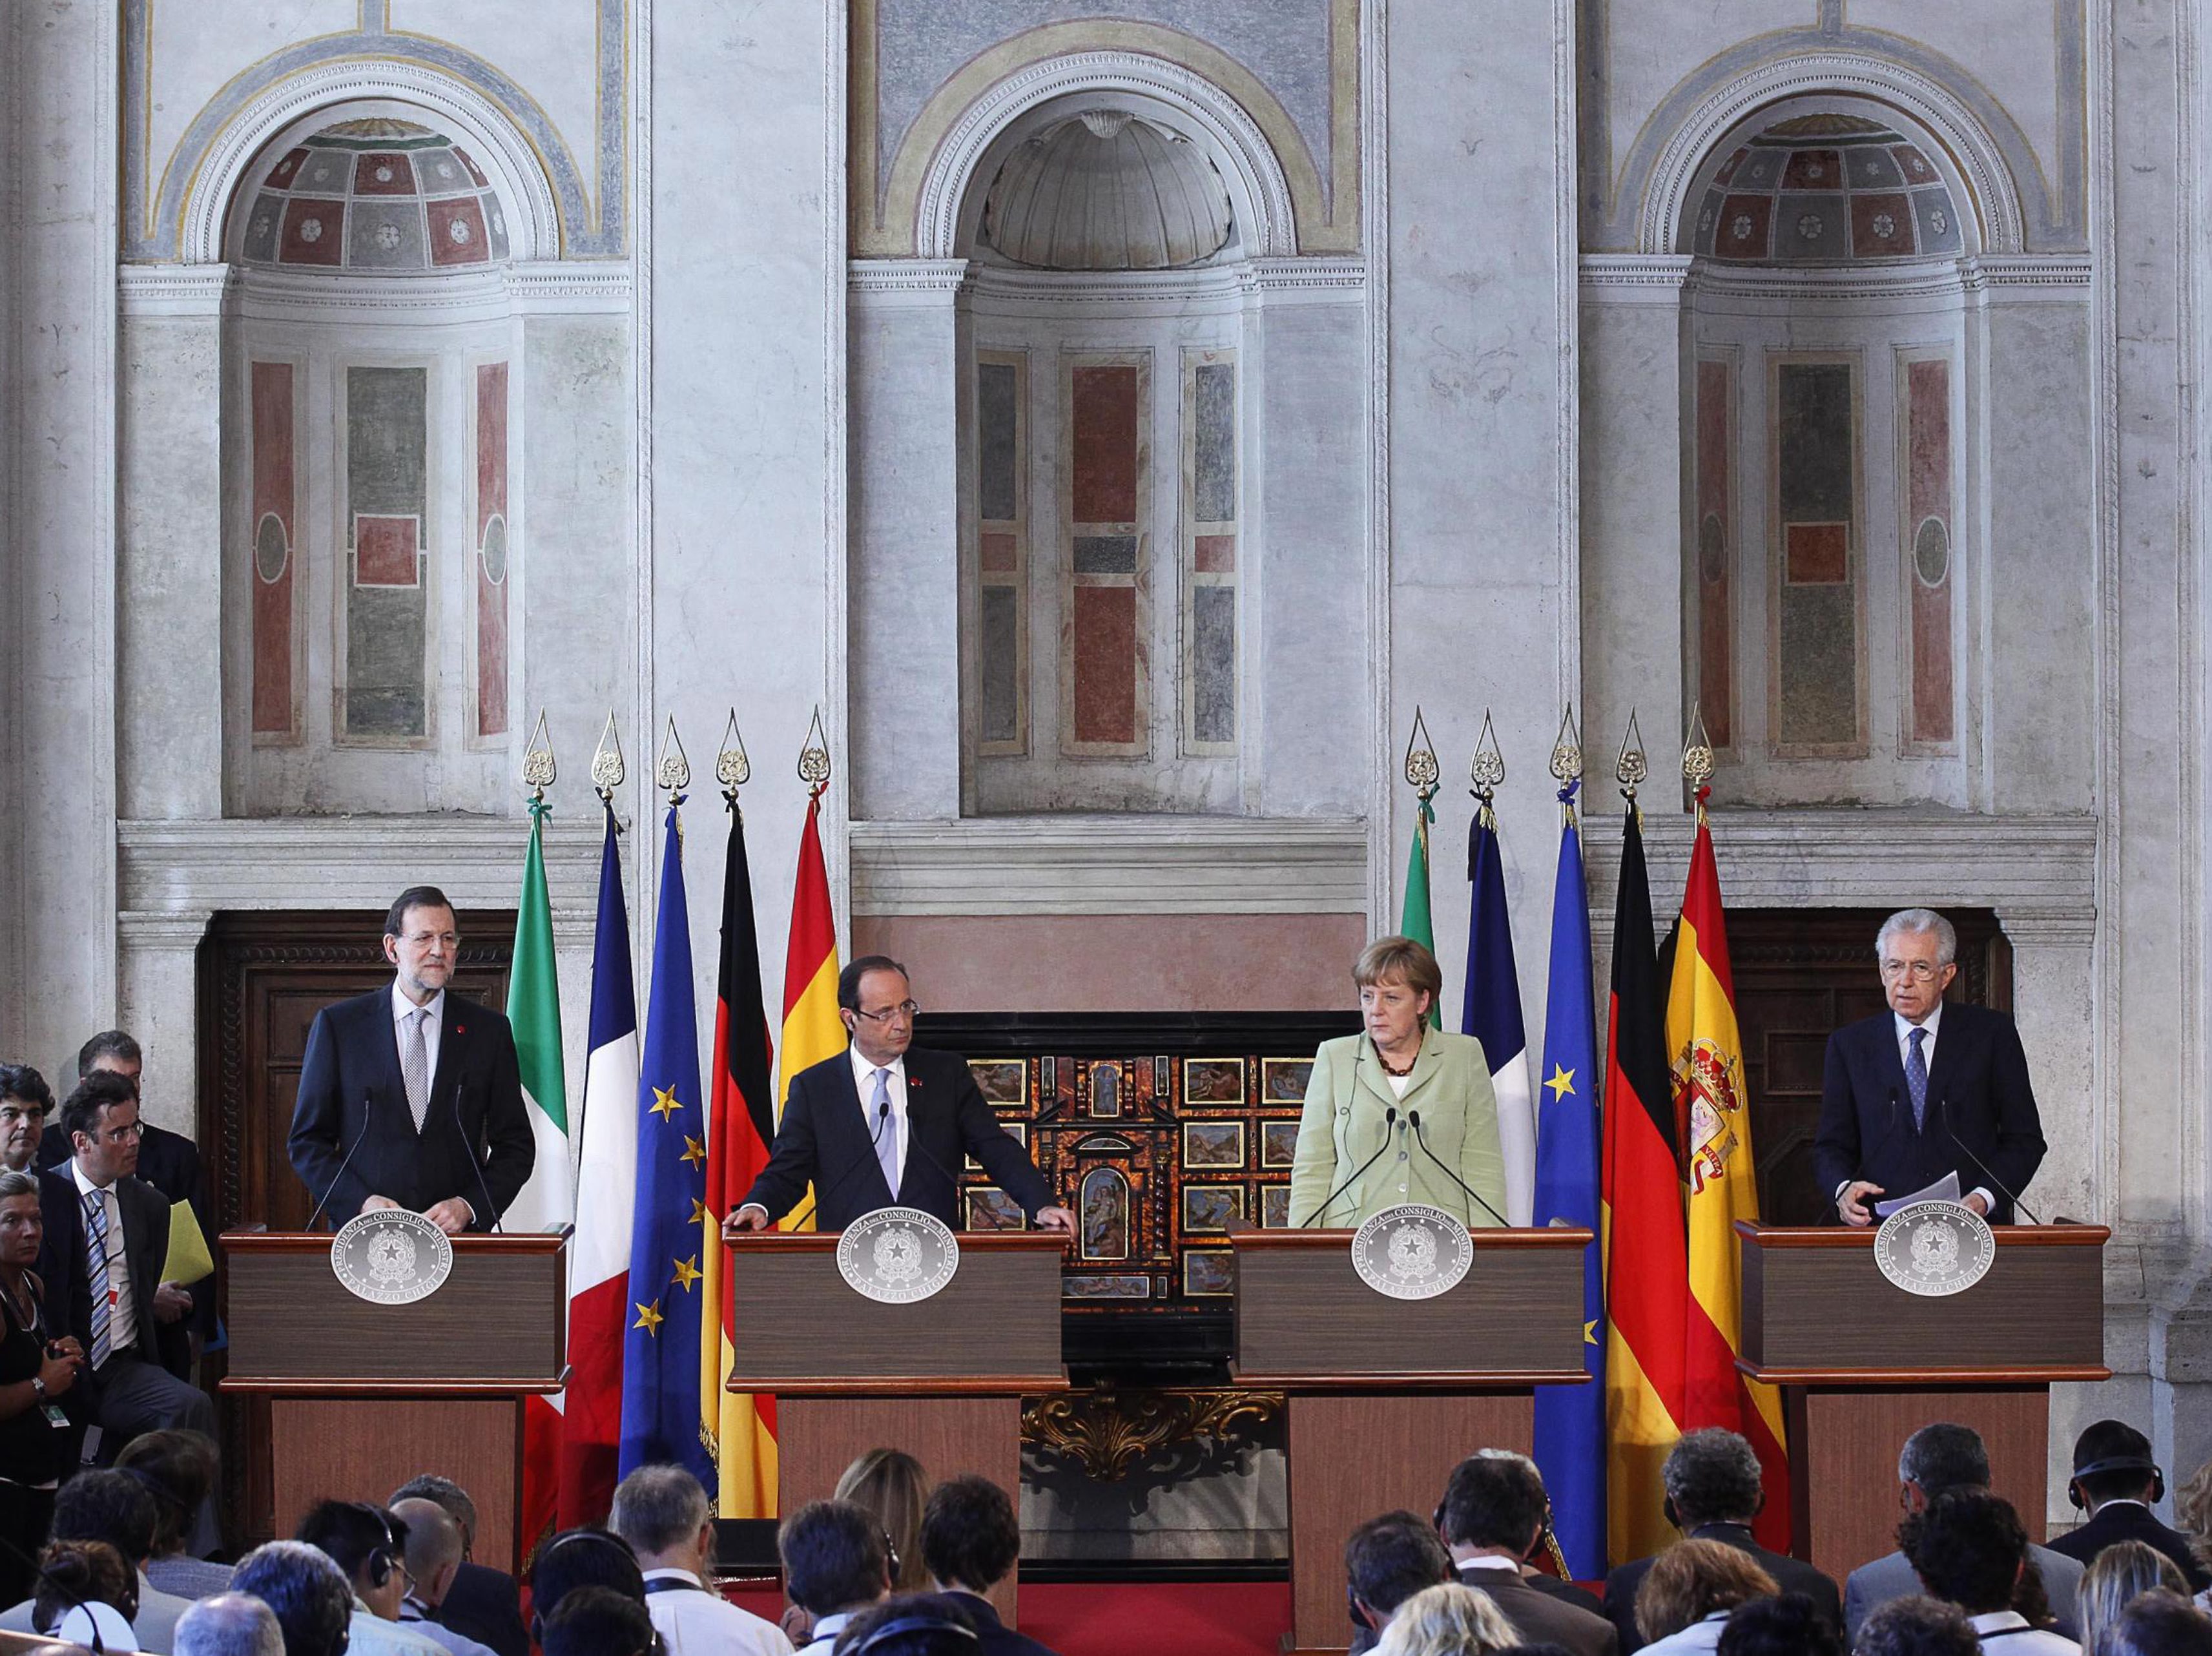 Рахой, Оланд, Меркел и Монти обсъдиха кризата преди срещата на върха